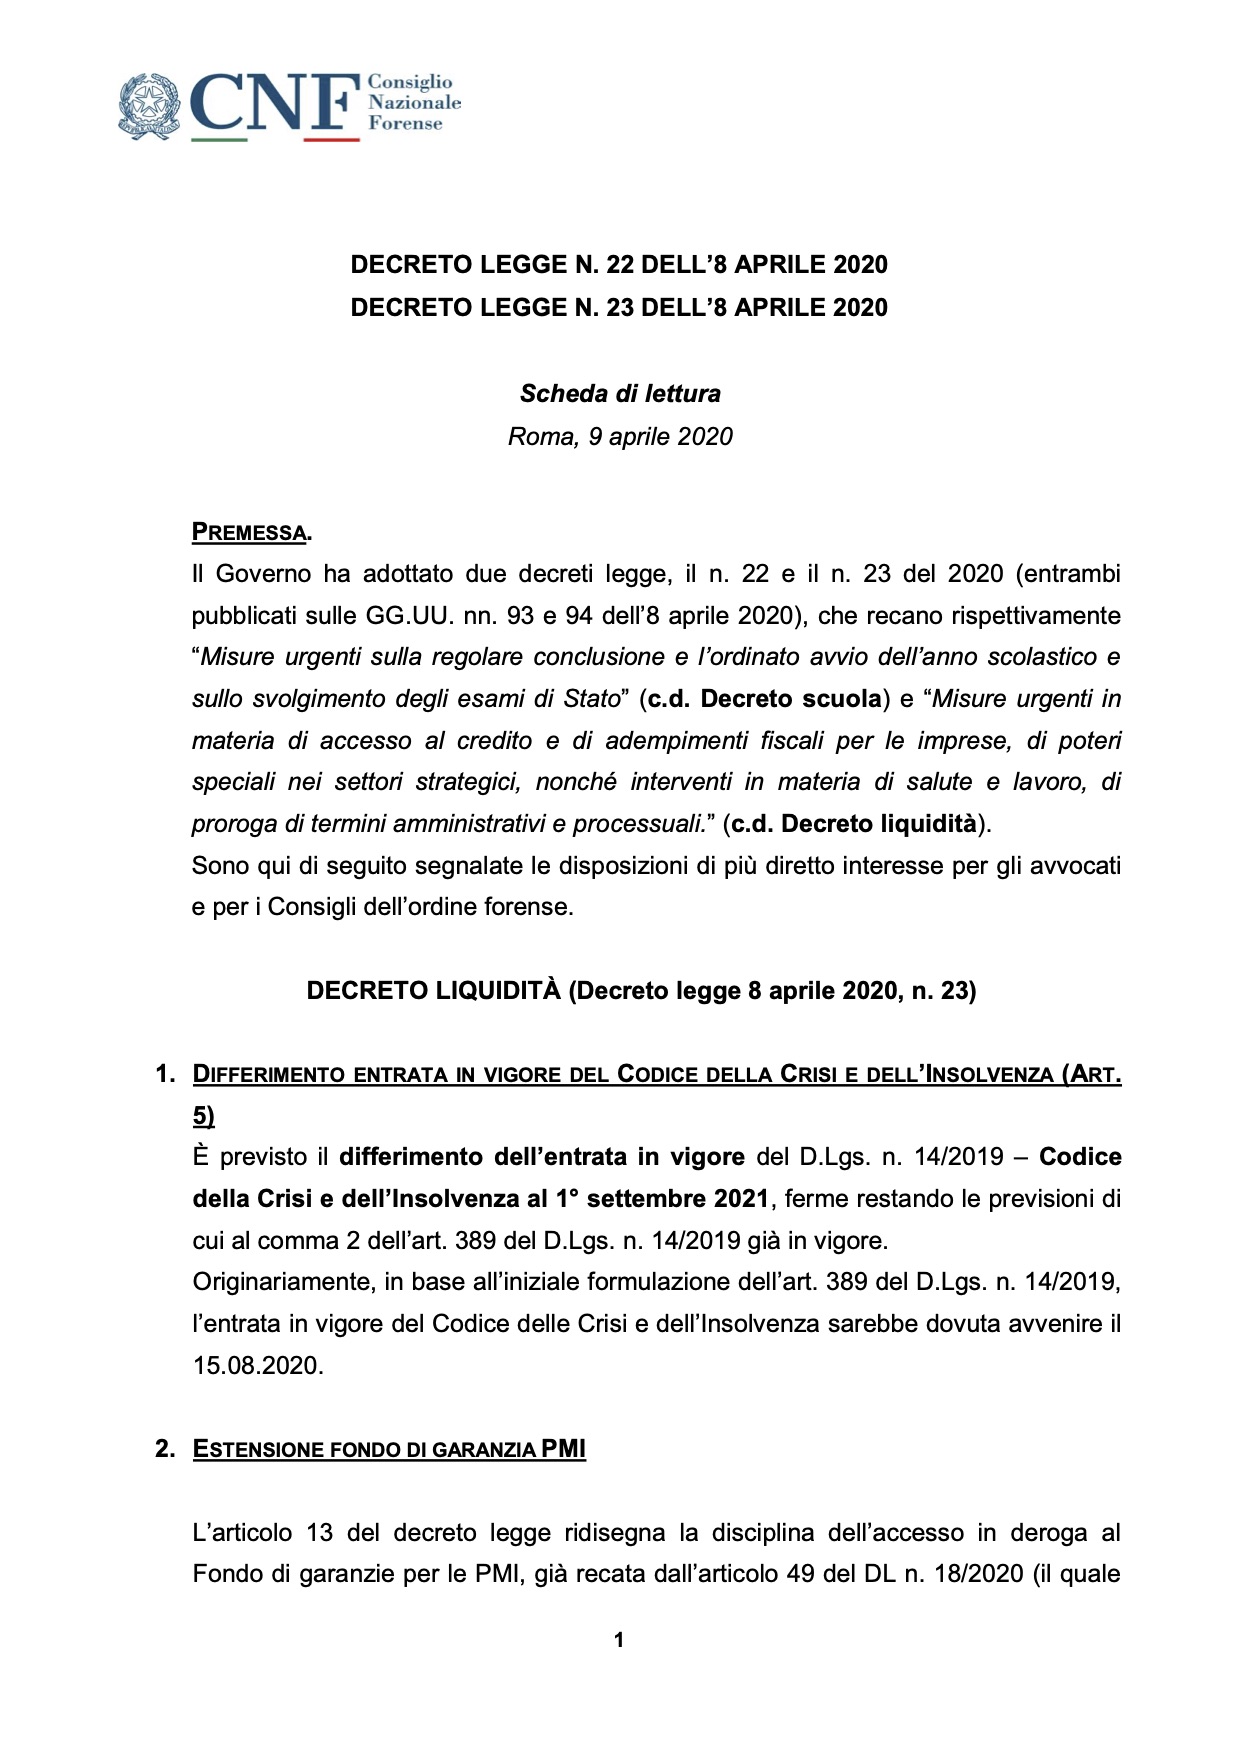 CNF - DECRETO LEGGE N. 22 DELL’8 APRILE 2020 DECRETO LEGGE N. 23 DELL’8 APRILE 2020 Scheda di lettura Roma, 9 aprile 2020